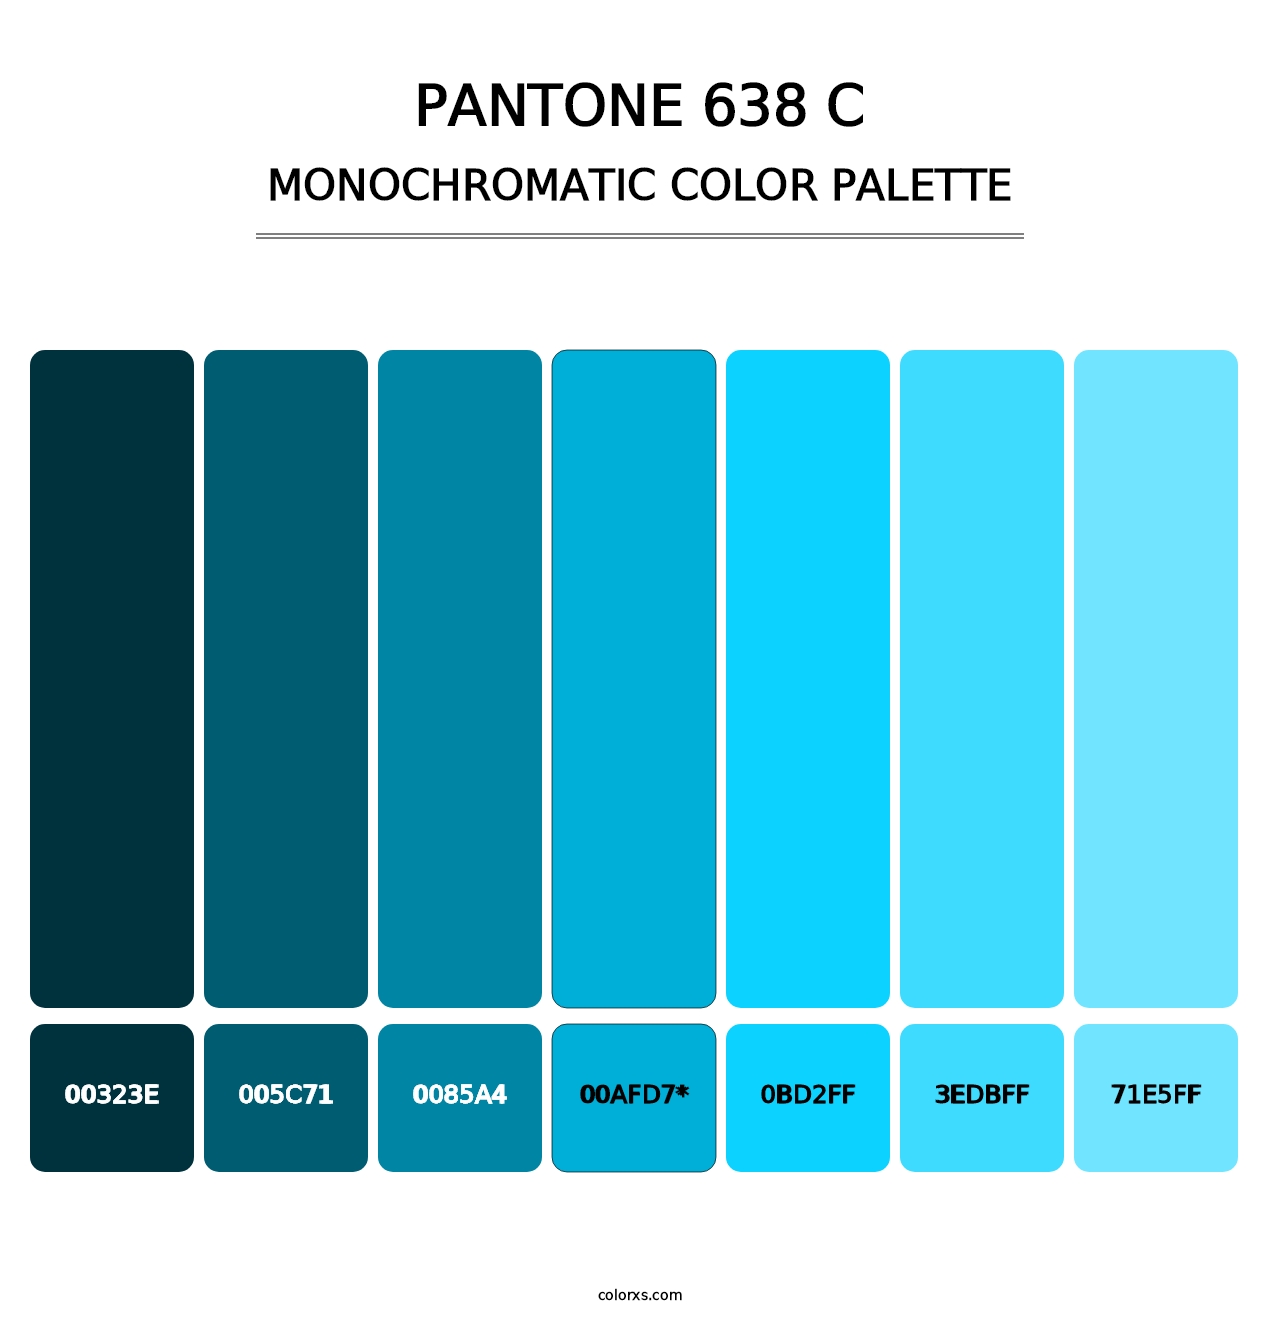 PANTONE 638 C - Monochromatic Color Palette